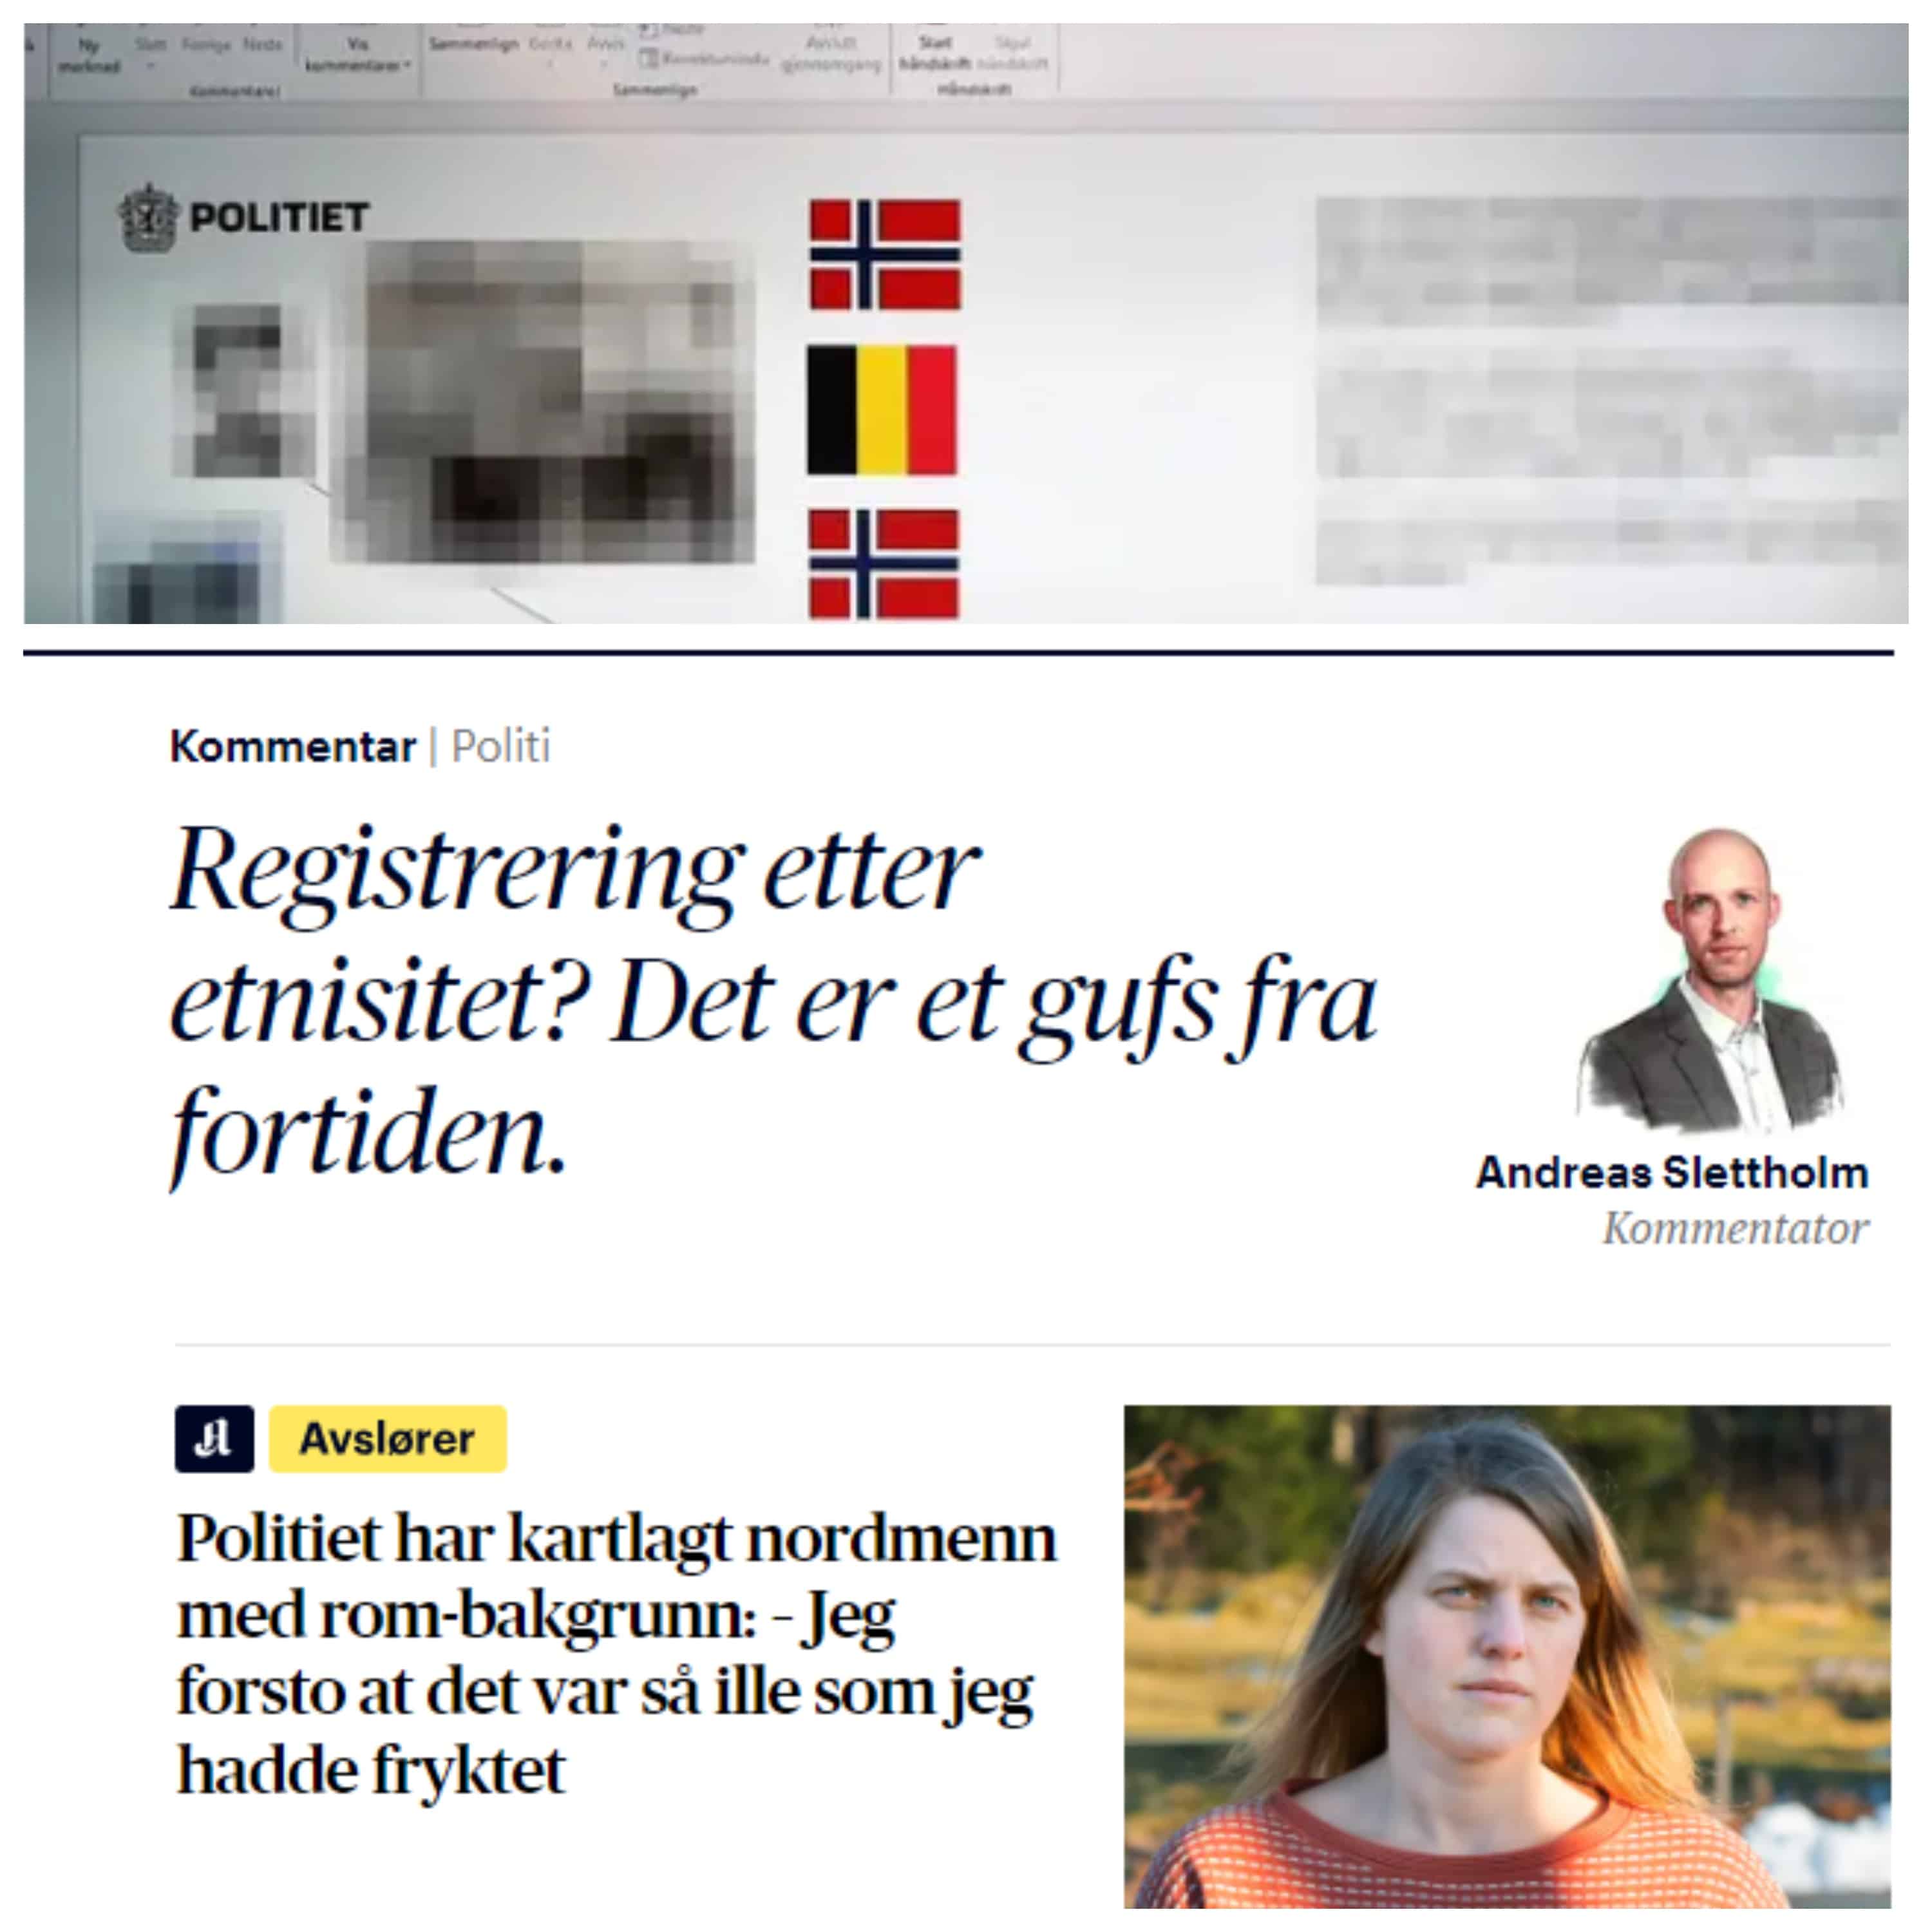 L'Aftenposten è il clan criminale rom “testardo” identificato dalla polizia